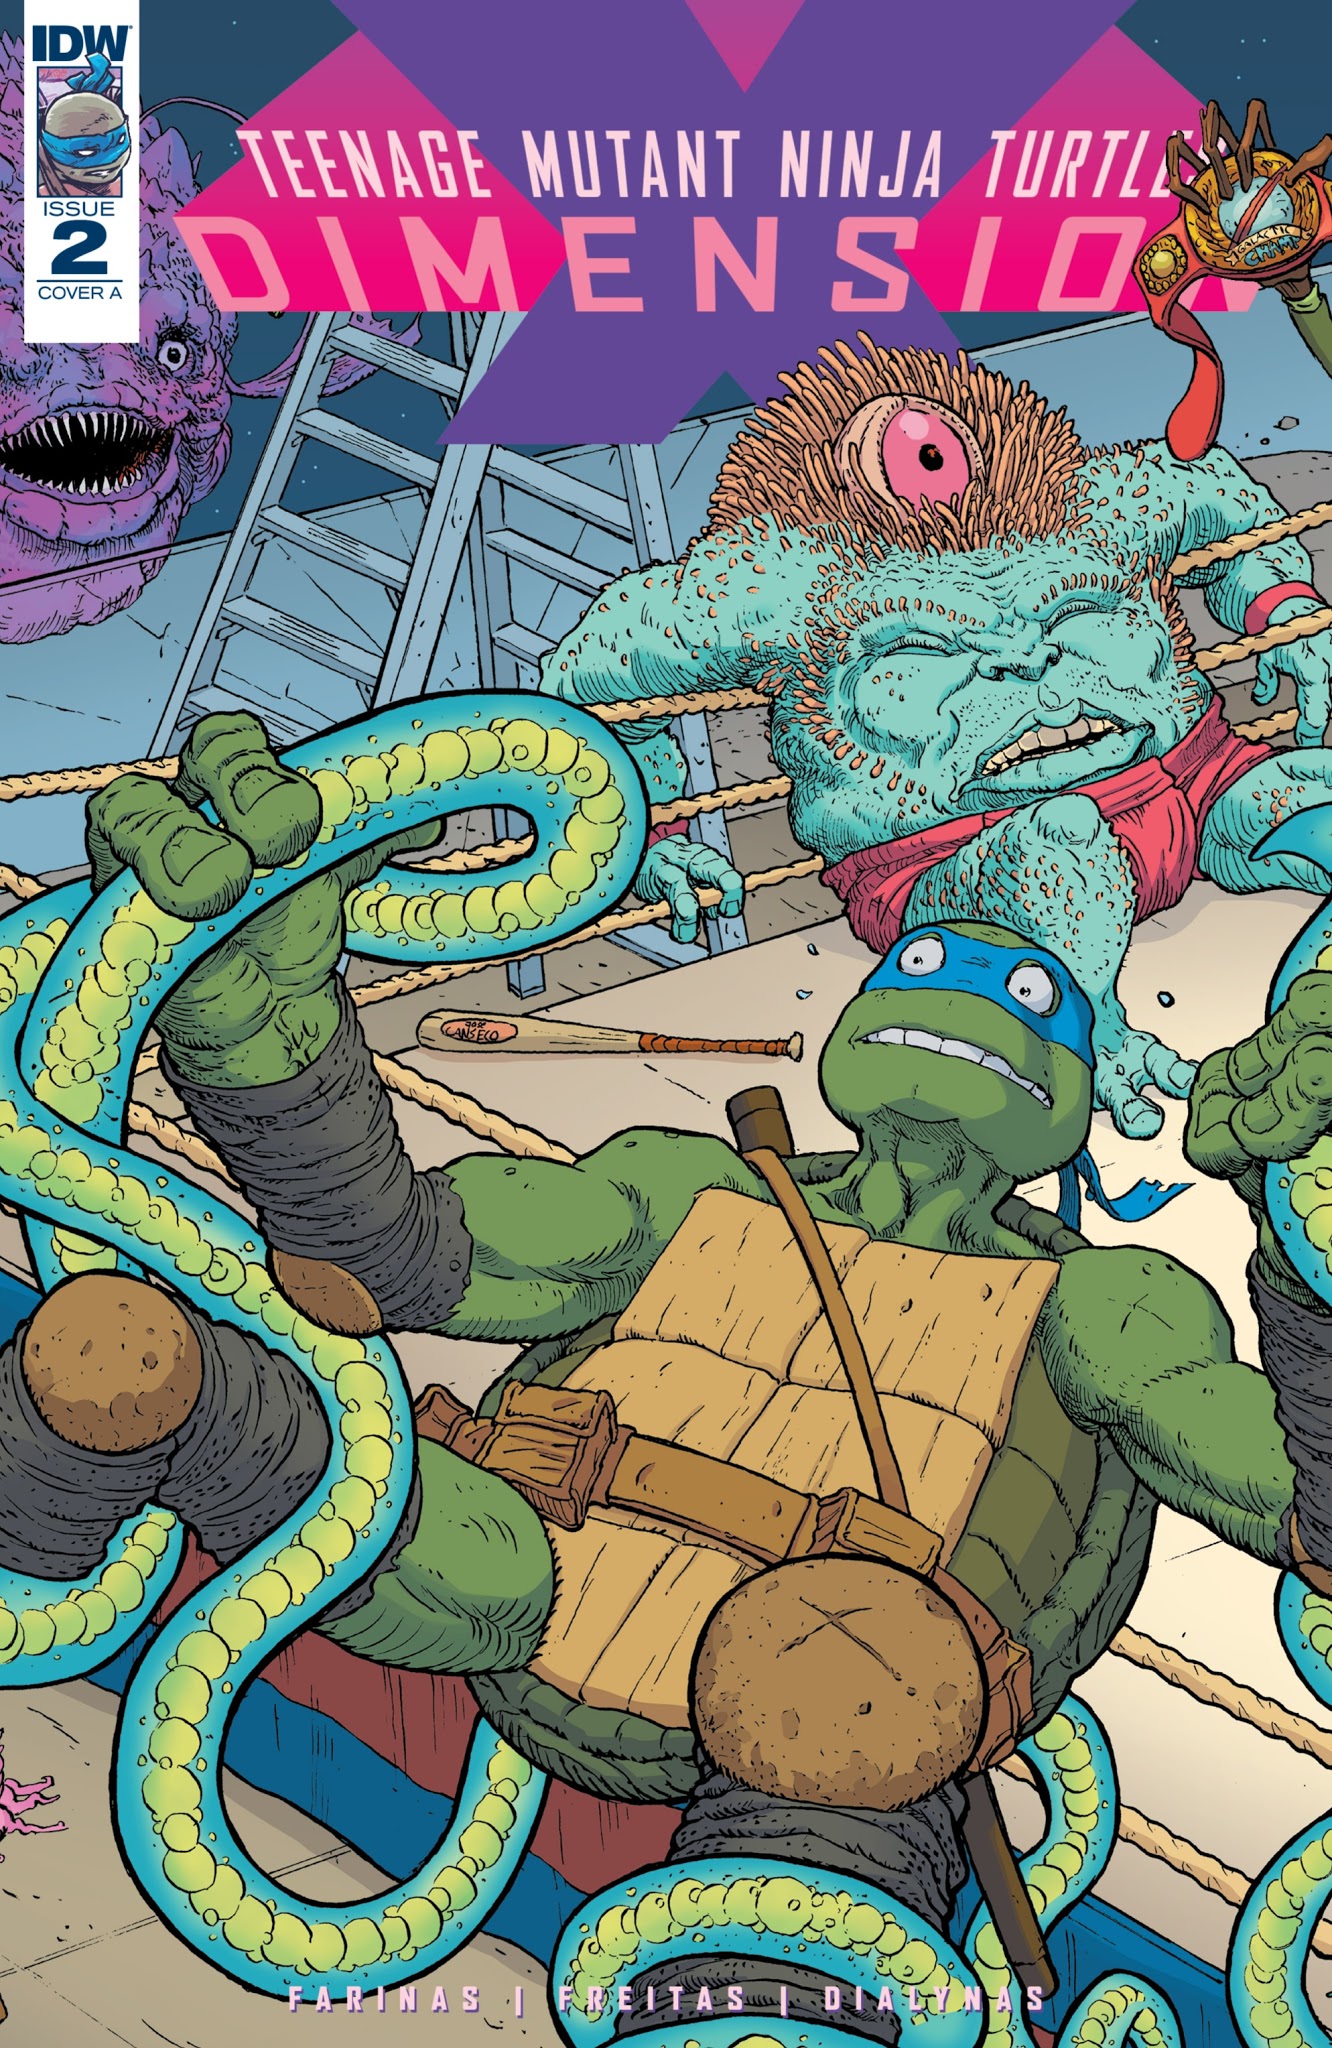 Read online Teenage Mutant Ninja Turtles: Dimension X comic -  Issue #2 - 1